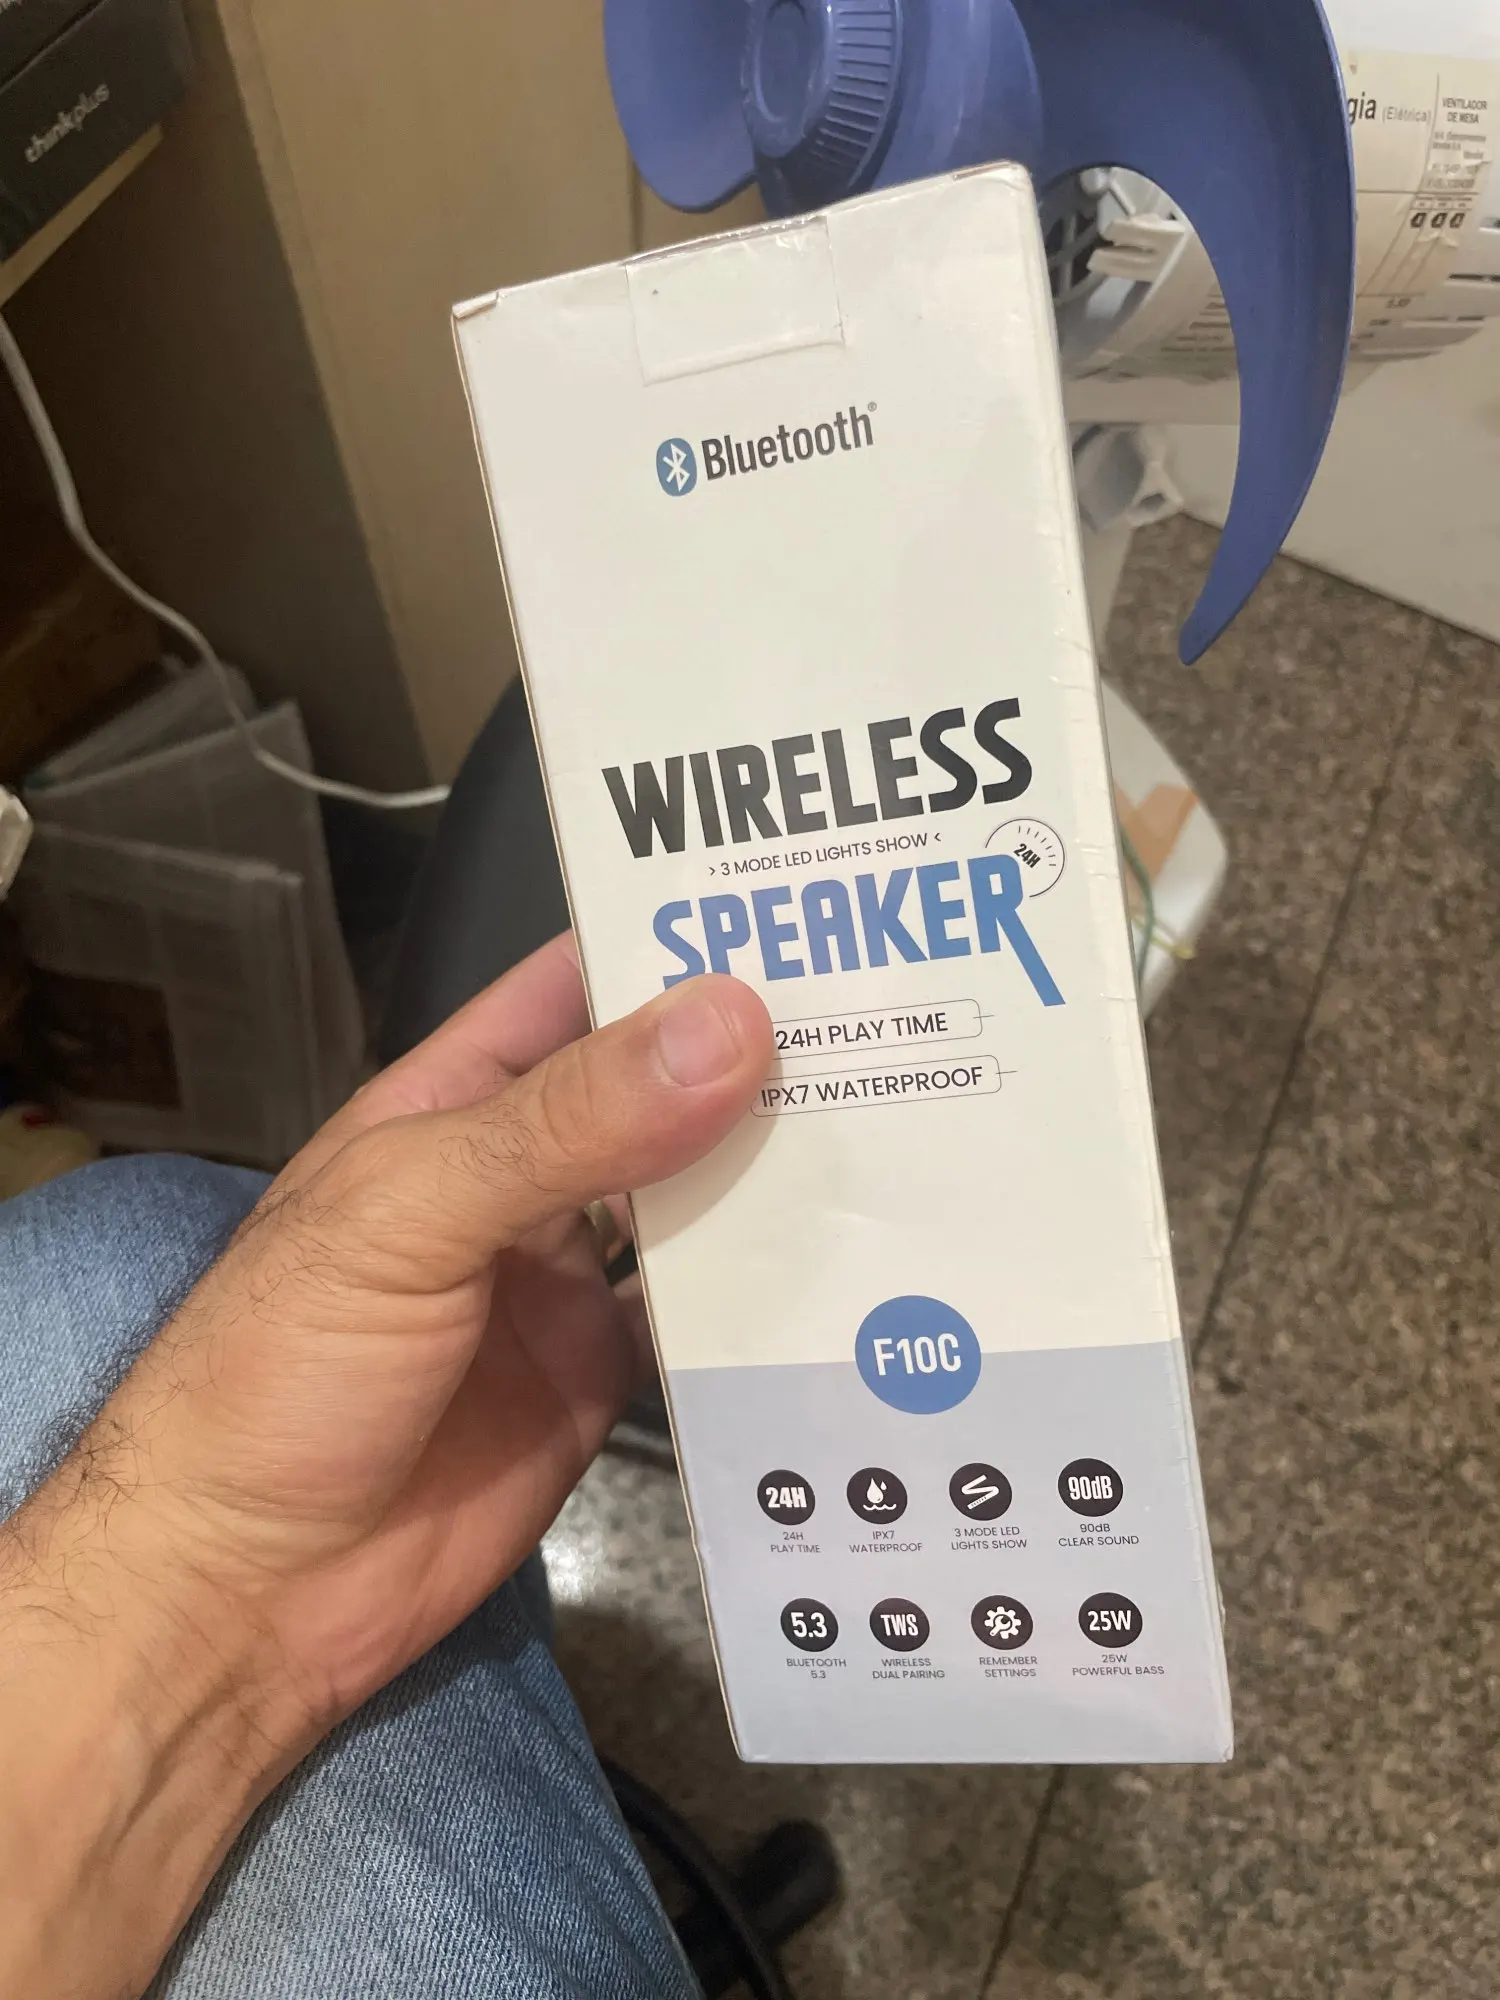 Caixa de Som Wisetiger Bluetooth photo review